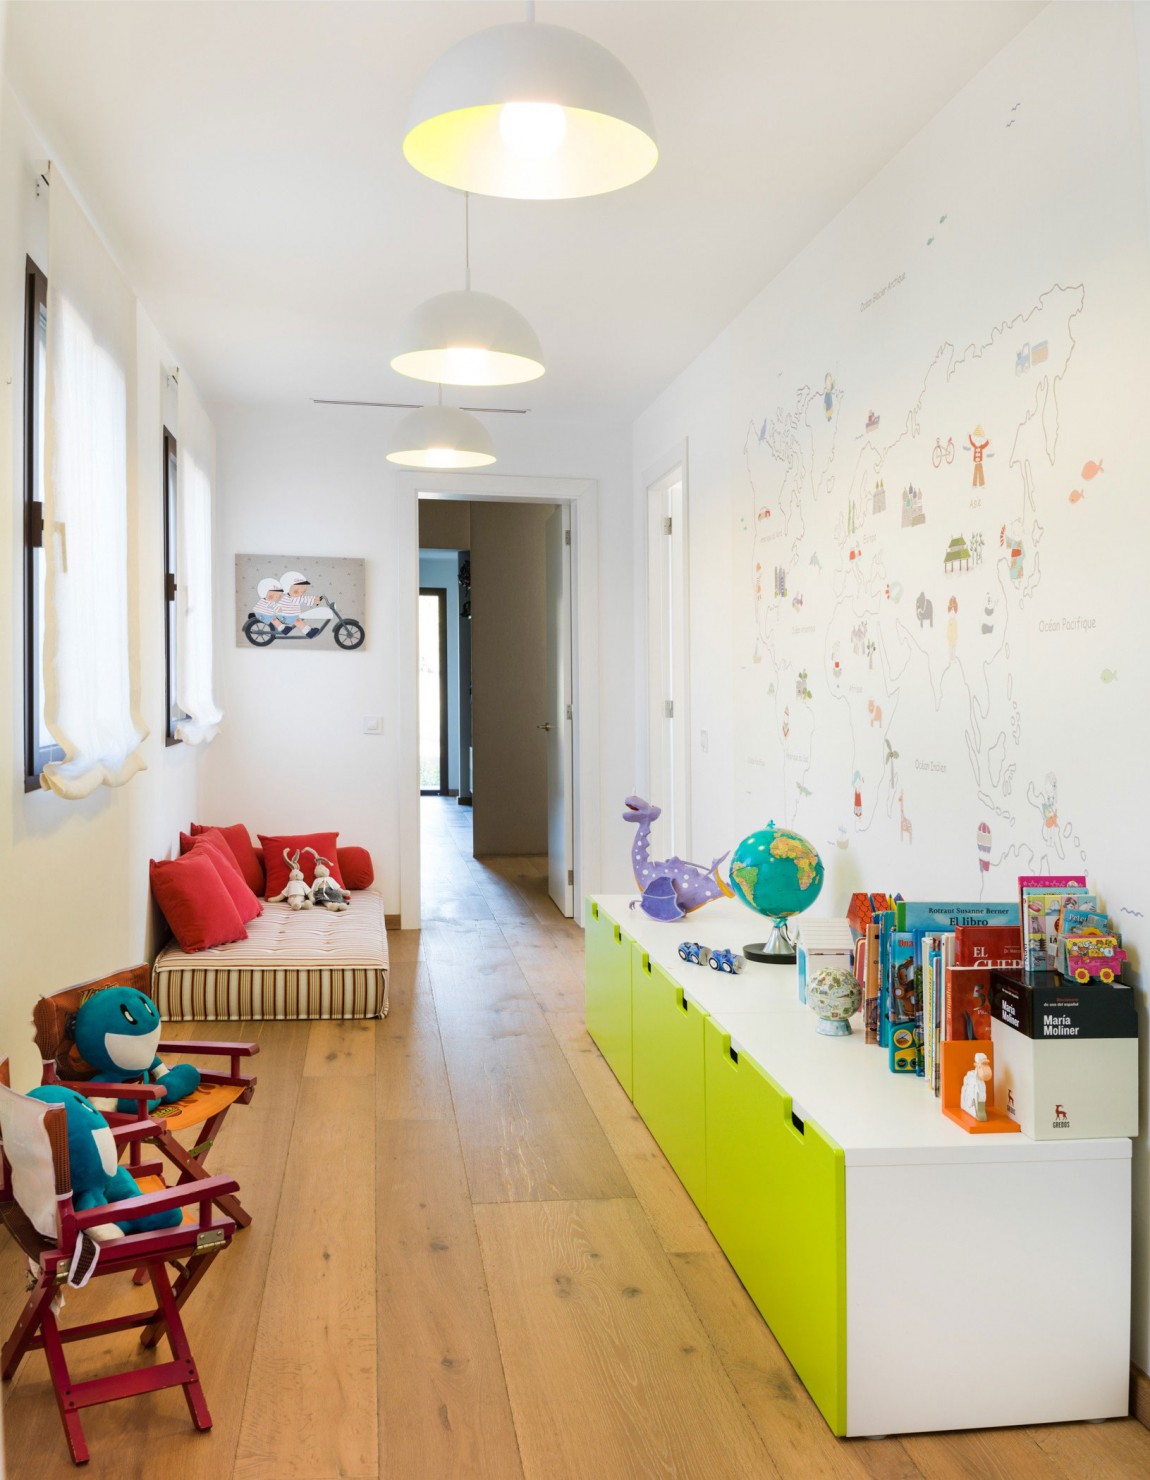 Вносим тепло и уют в интерьер детской комнаты для девочки с помощью советов дизайнеров